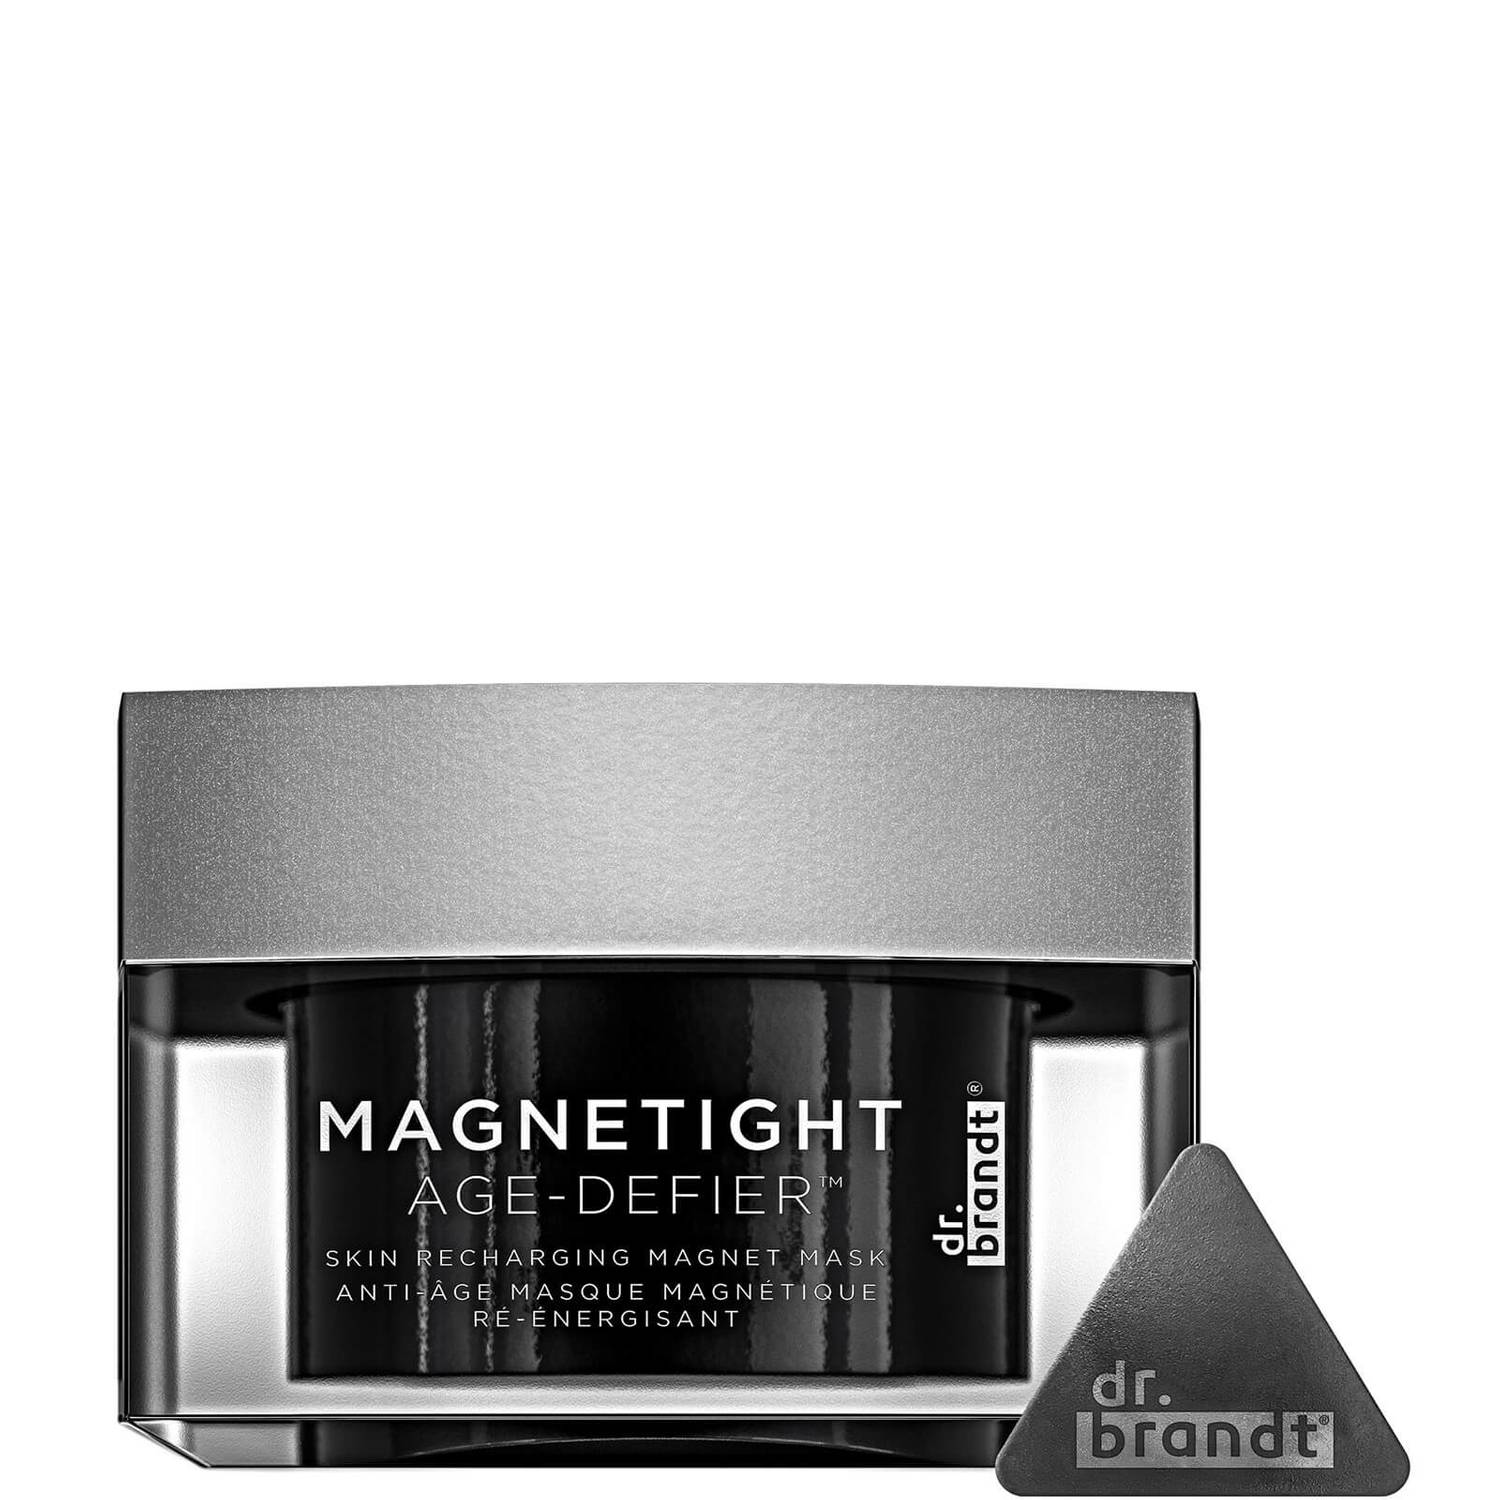 Magnetight Age Defier, la nueva mascarilla de Dr. Brandt Skincare